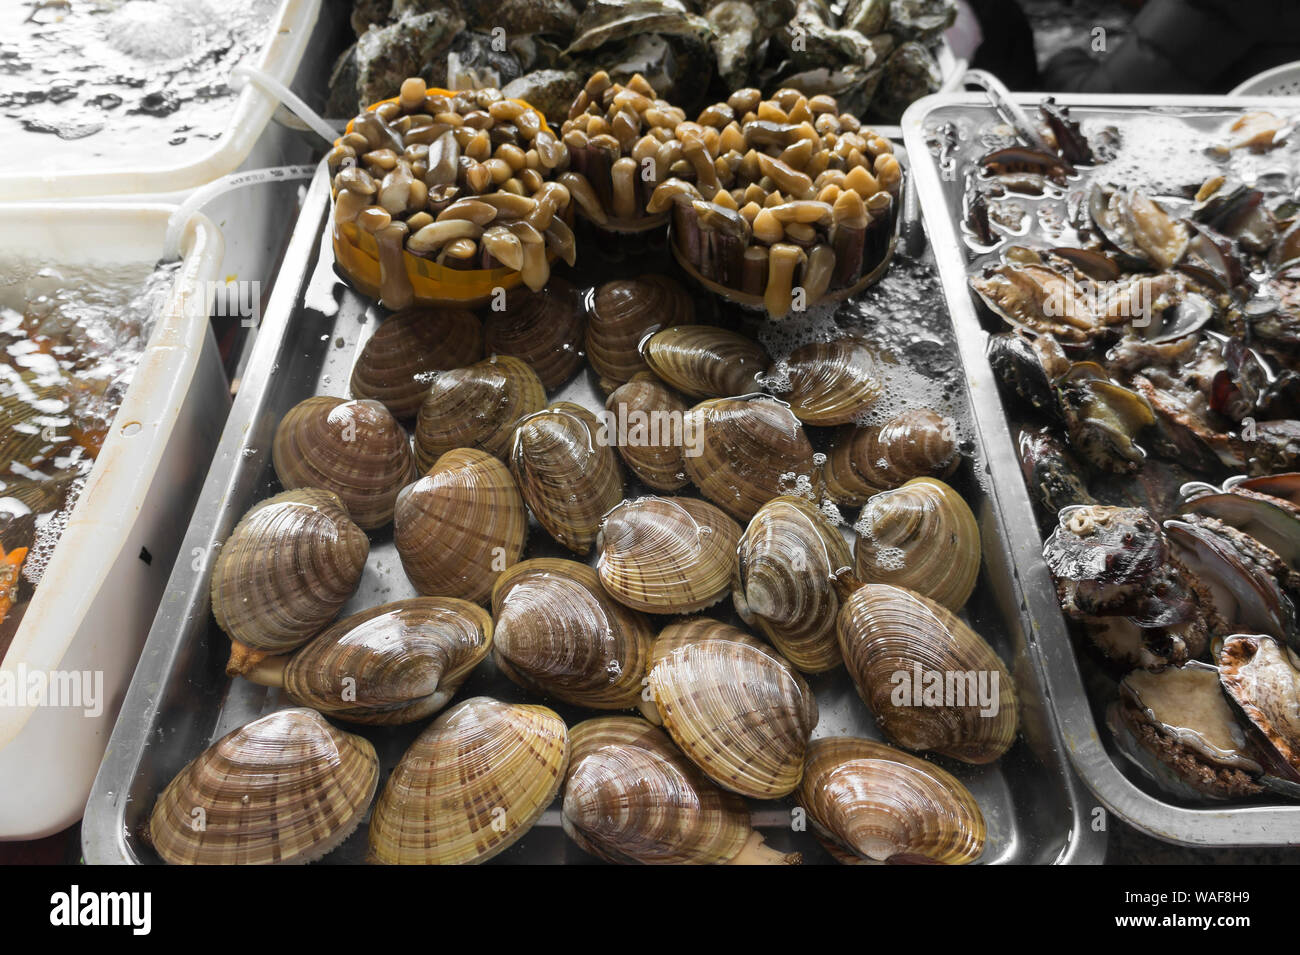 mollusks at a local food market. Hainan, China Stock Photo